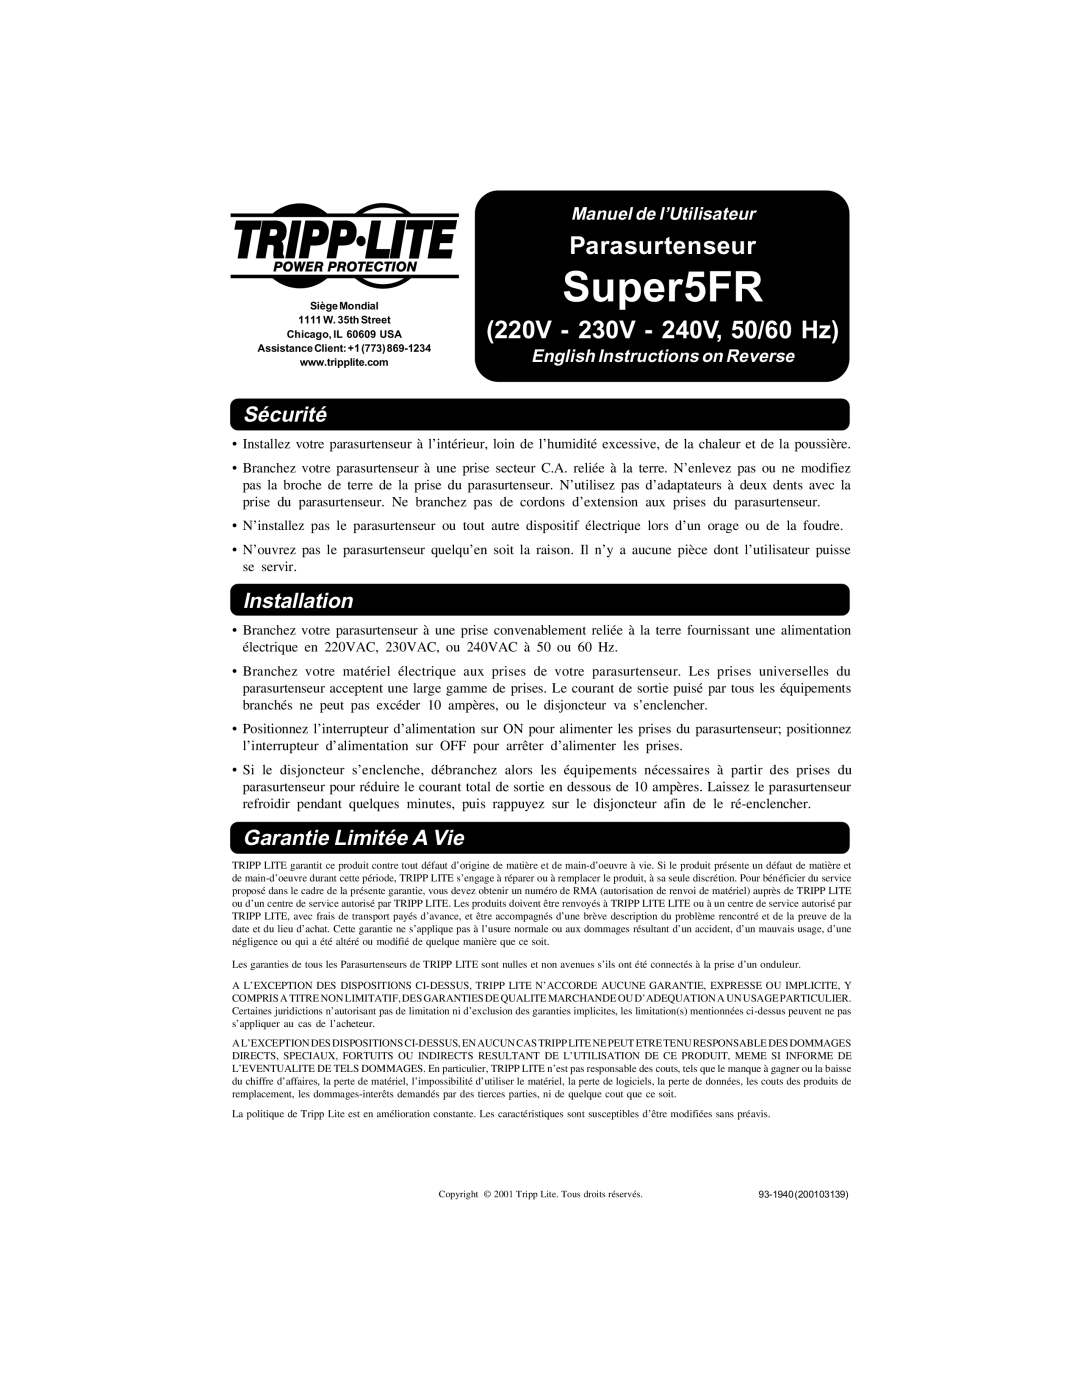 Tripp Lite Super5FR owner manual Parasurtenseur, Sécurité, Garantie Limitée A Vie, Manuel de l’Utilisateur, Installation 